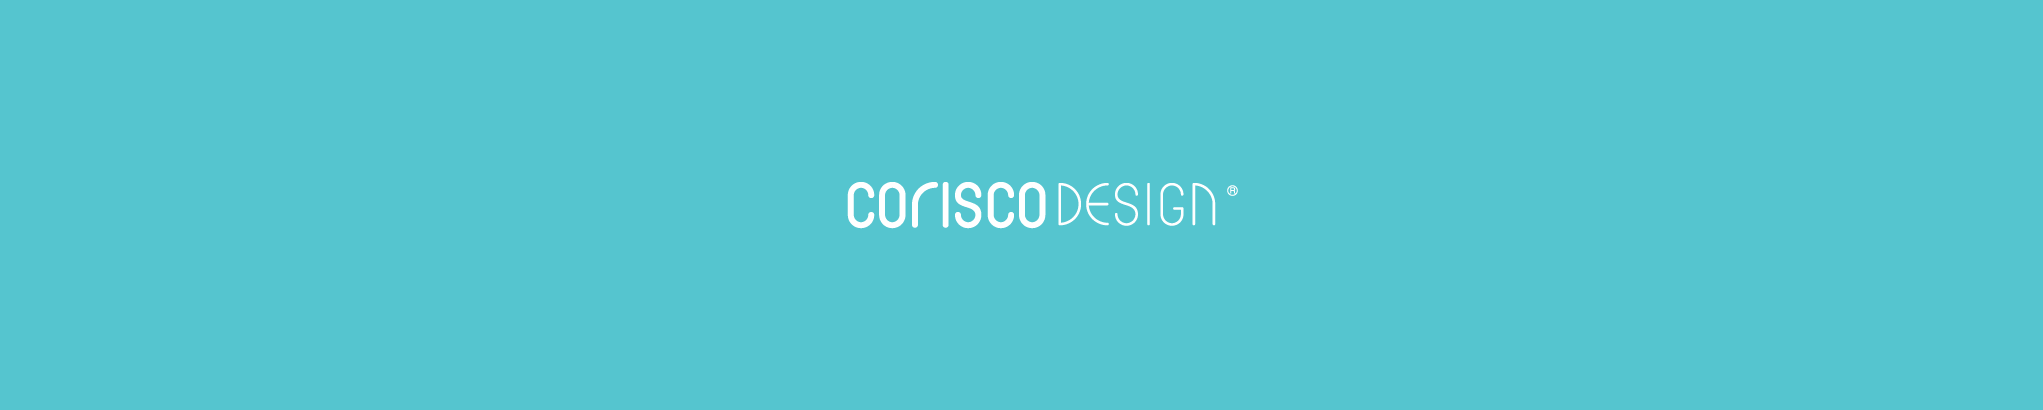 Corisco Designs profilbanner